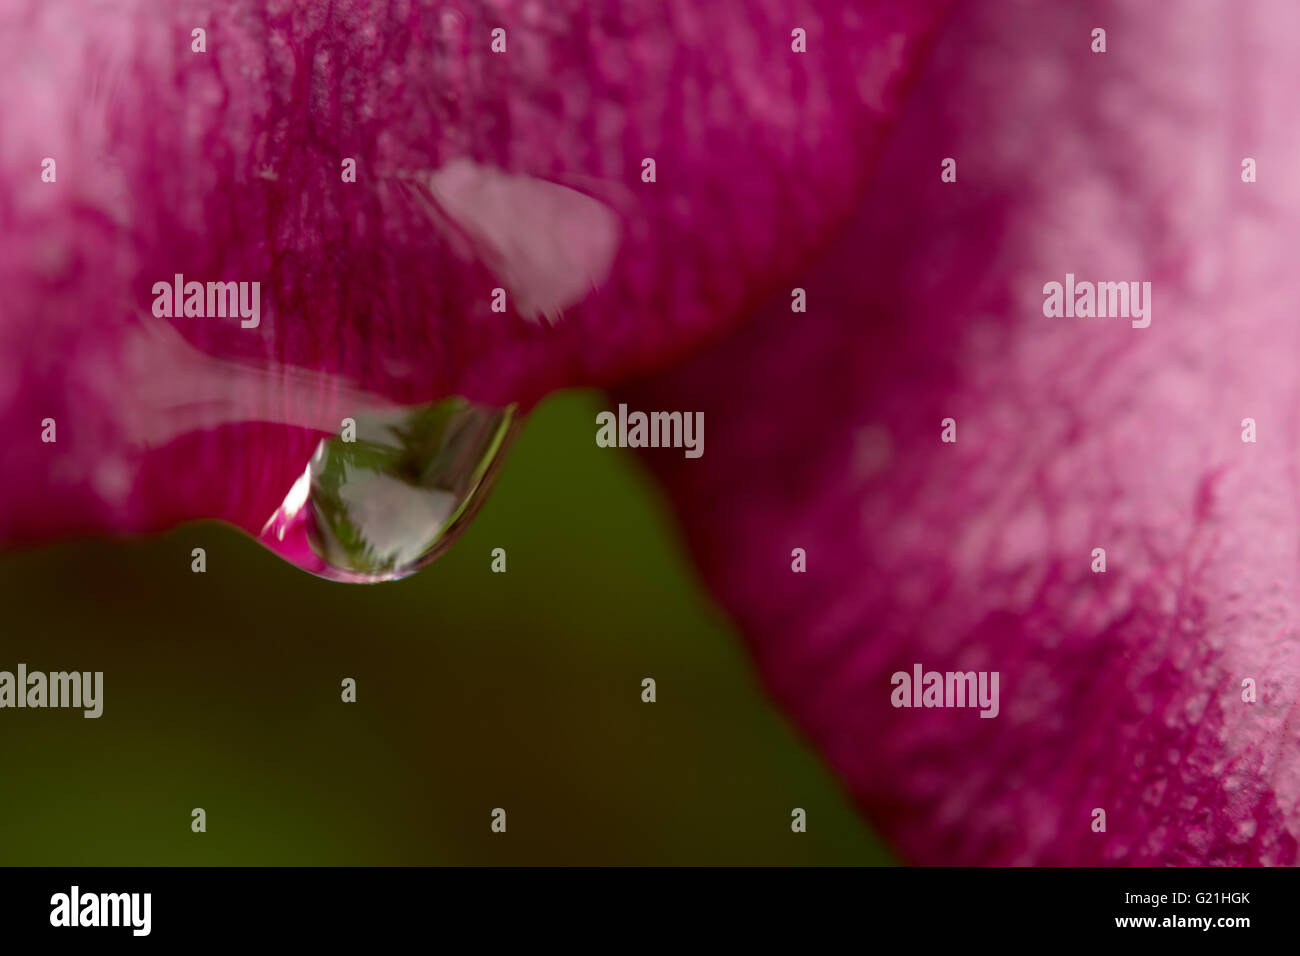 Gros plan de fleurs magenta avec goutte de rosée Banque D'Images